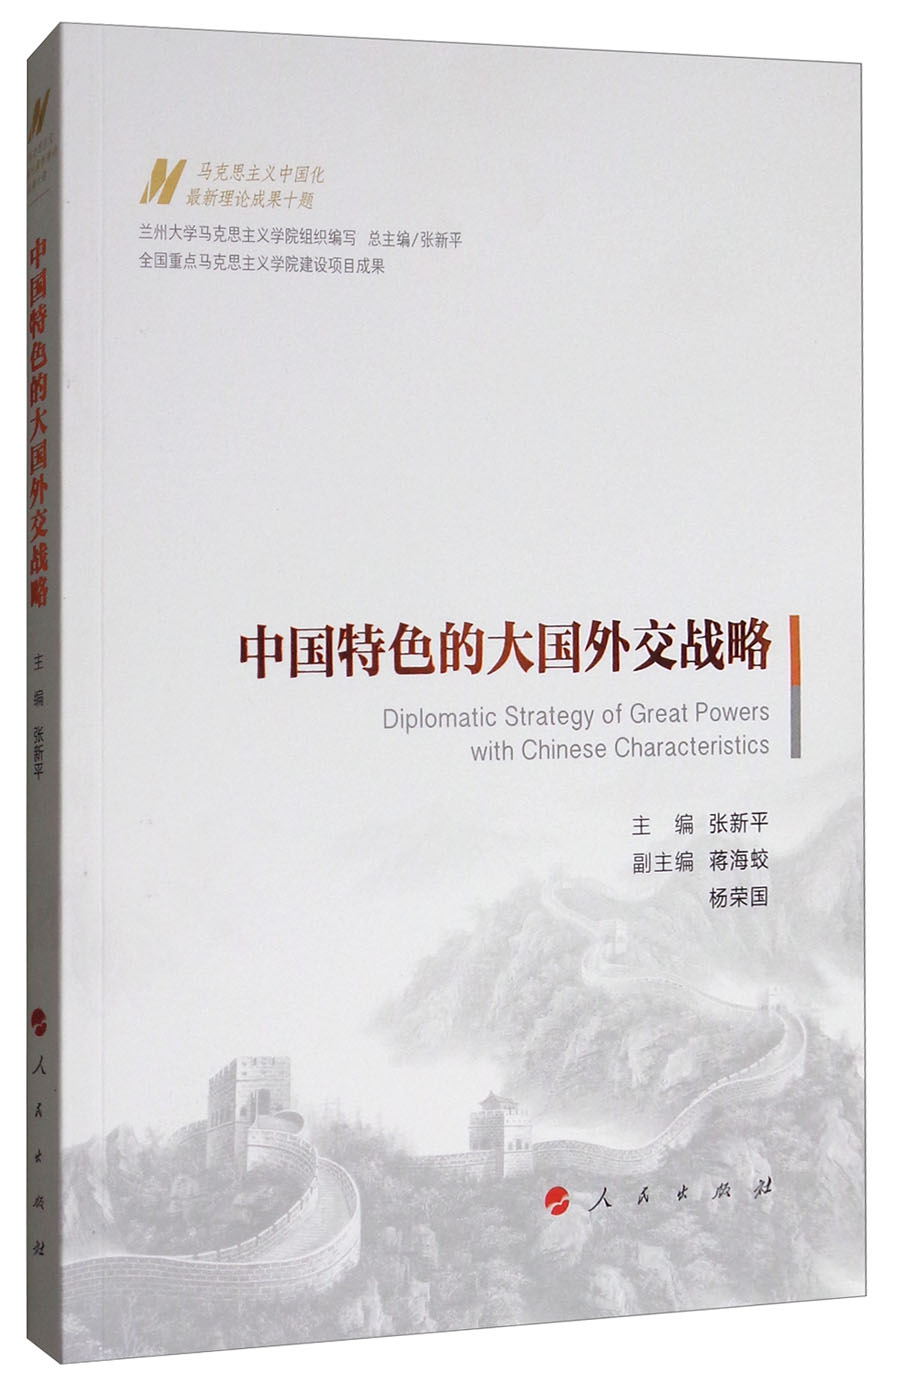 中国特色的大国外交战略/马克思主义中国化最新理论成果十题